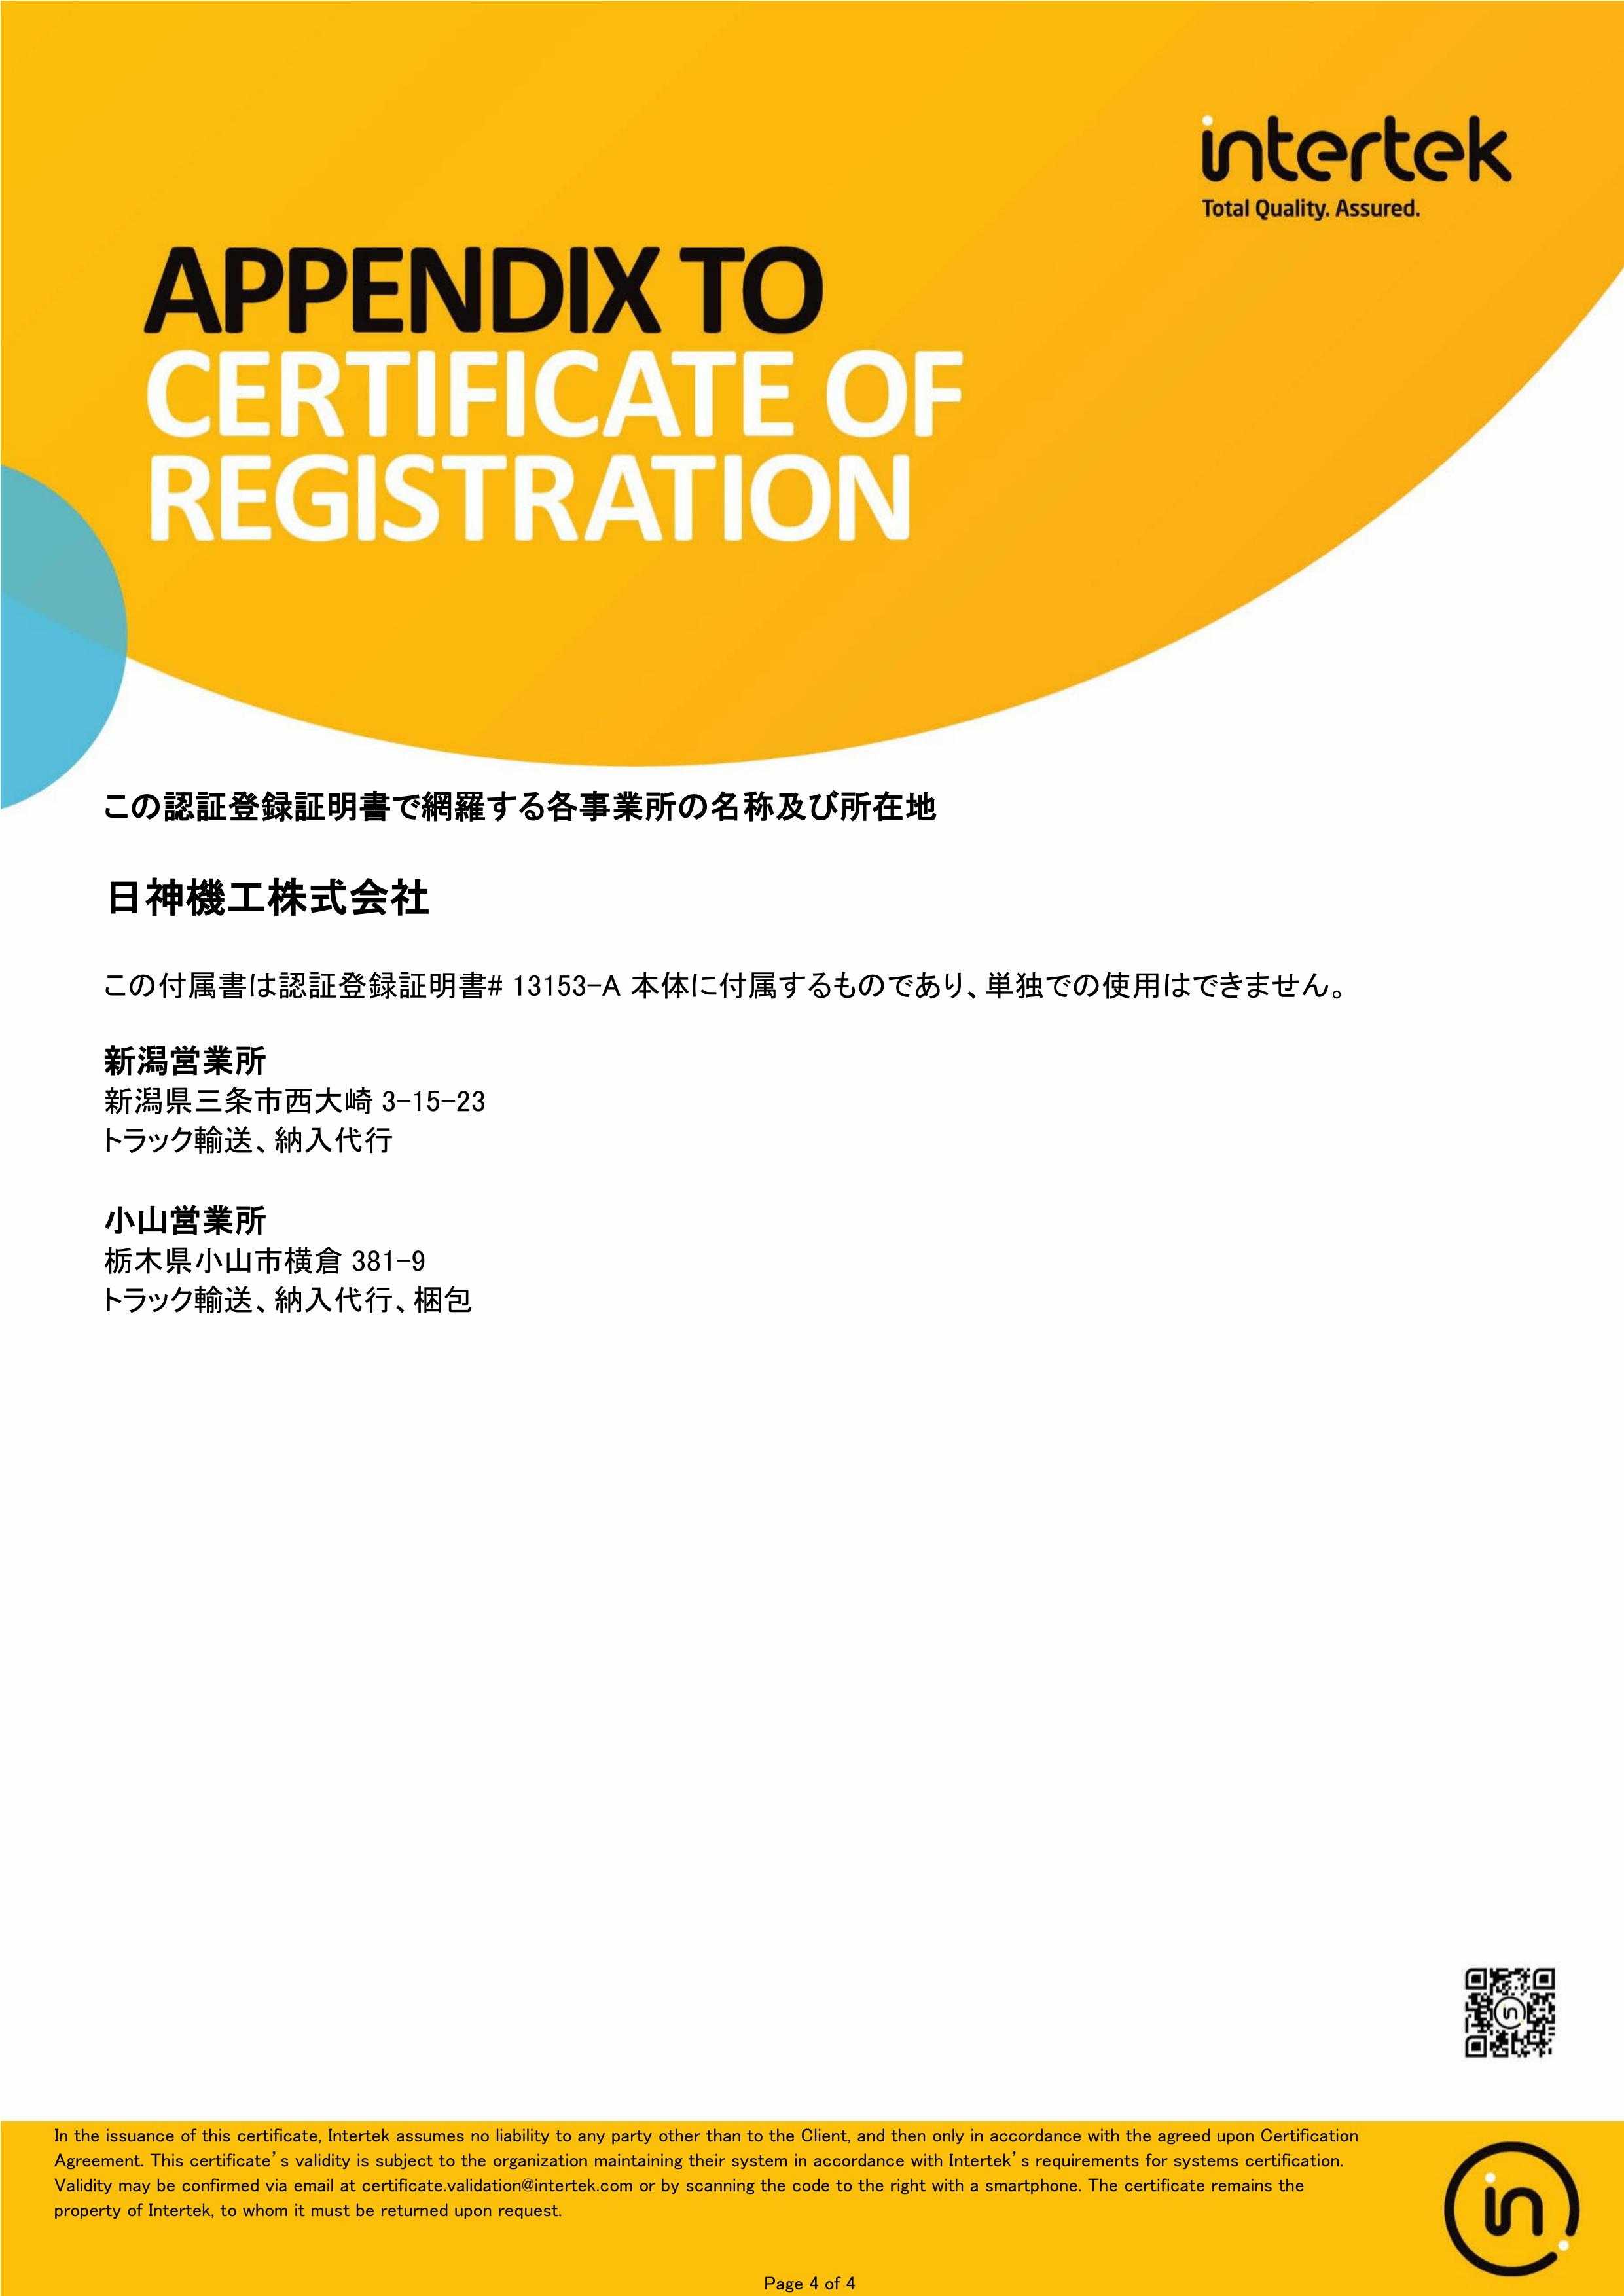 ISO9001登録証4分の4ページ目を表示しております